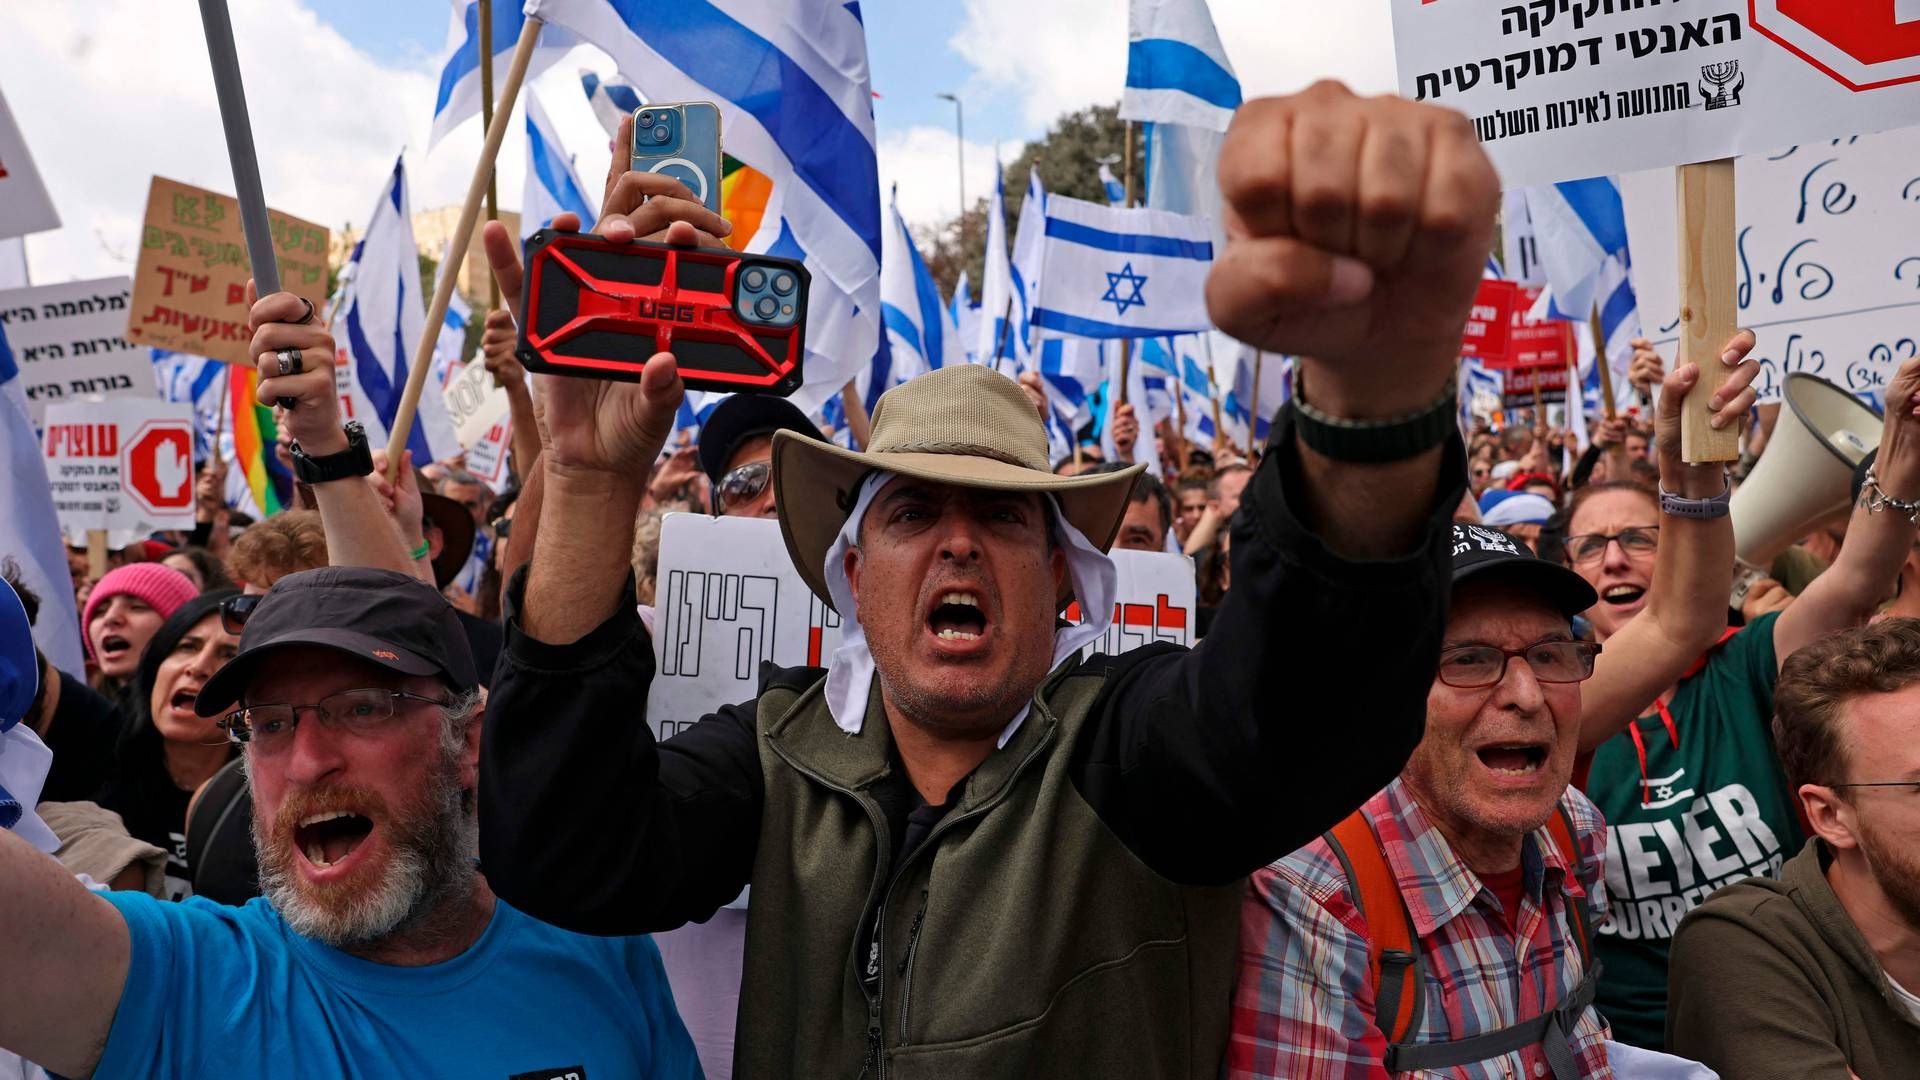 Demonstranter foran Israels parlament i Jerusalem råbte mandag slogans imod Netanyahus retsreform. Krisen har skubbet Israel ud i en politisk krise. | Foto: Hazem Bader